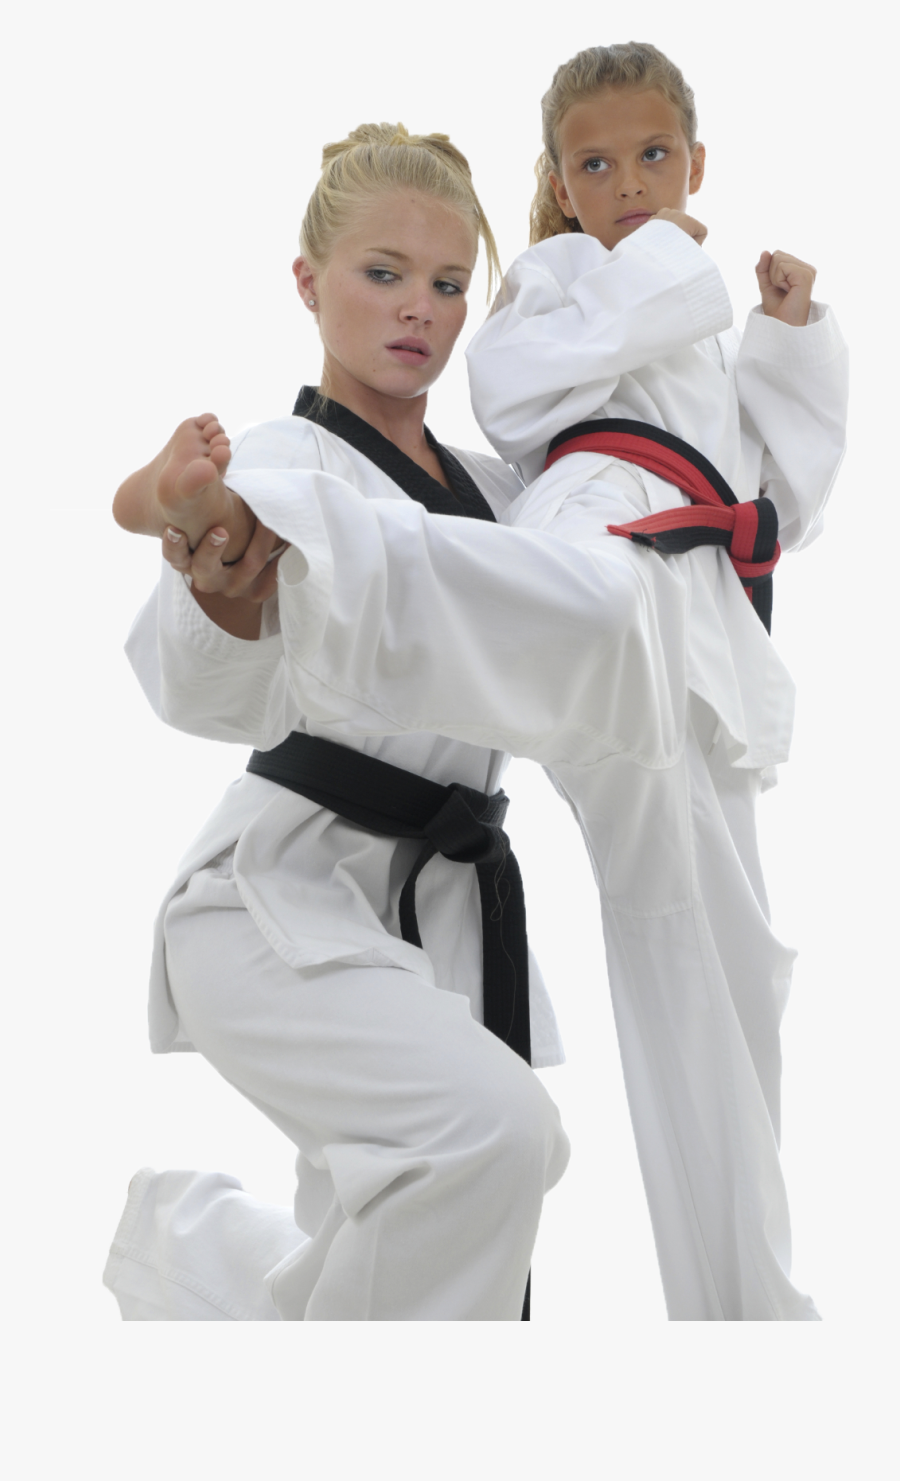 Girl Karate Png - Kids Karate Kick, Transparent Clipart